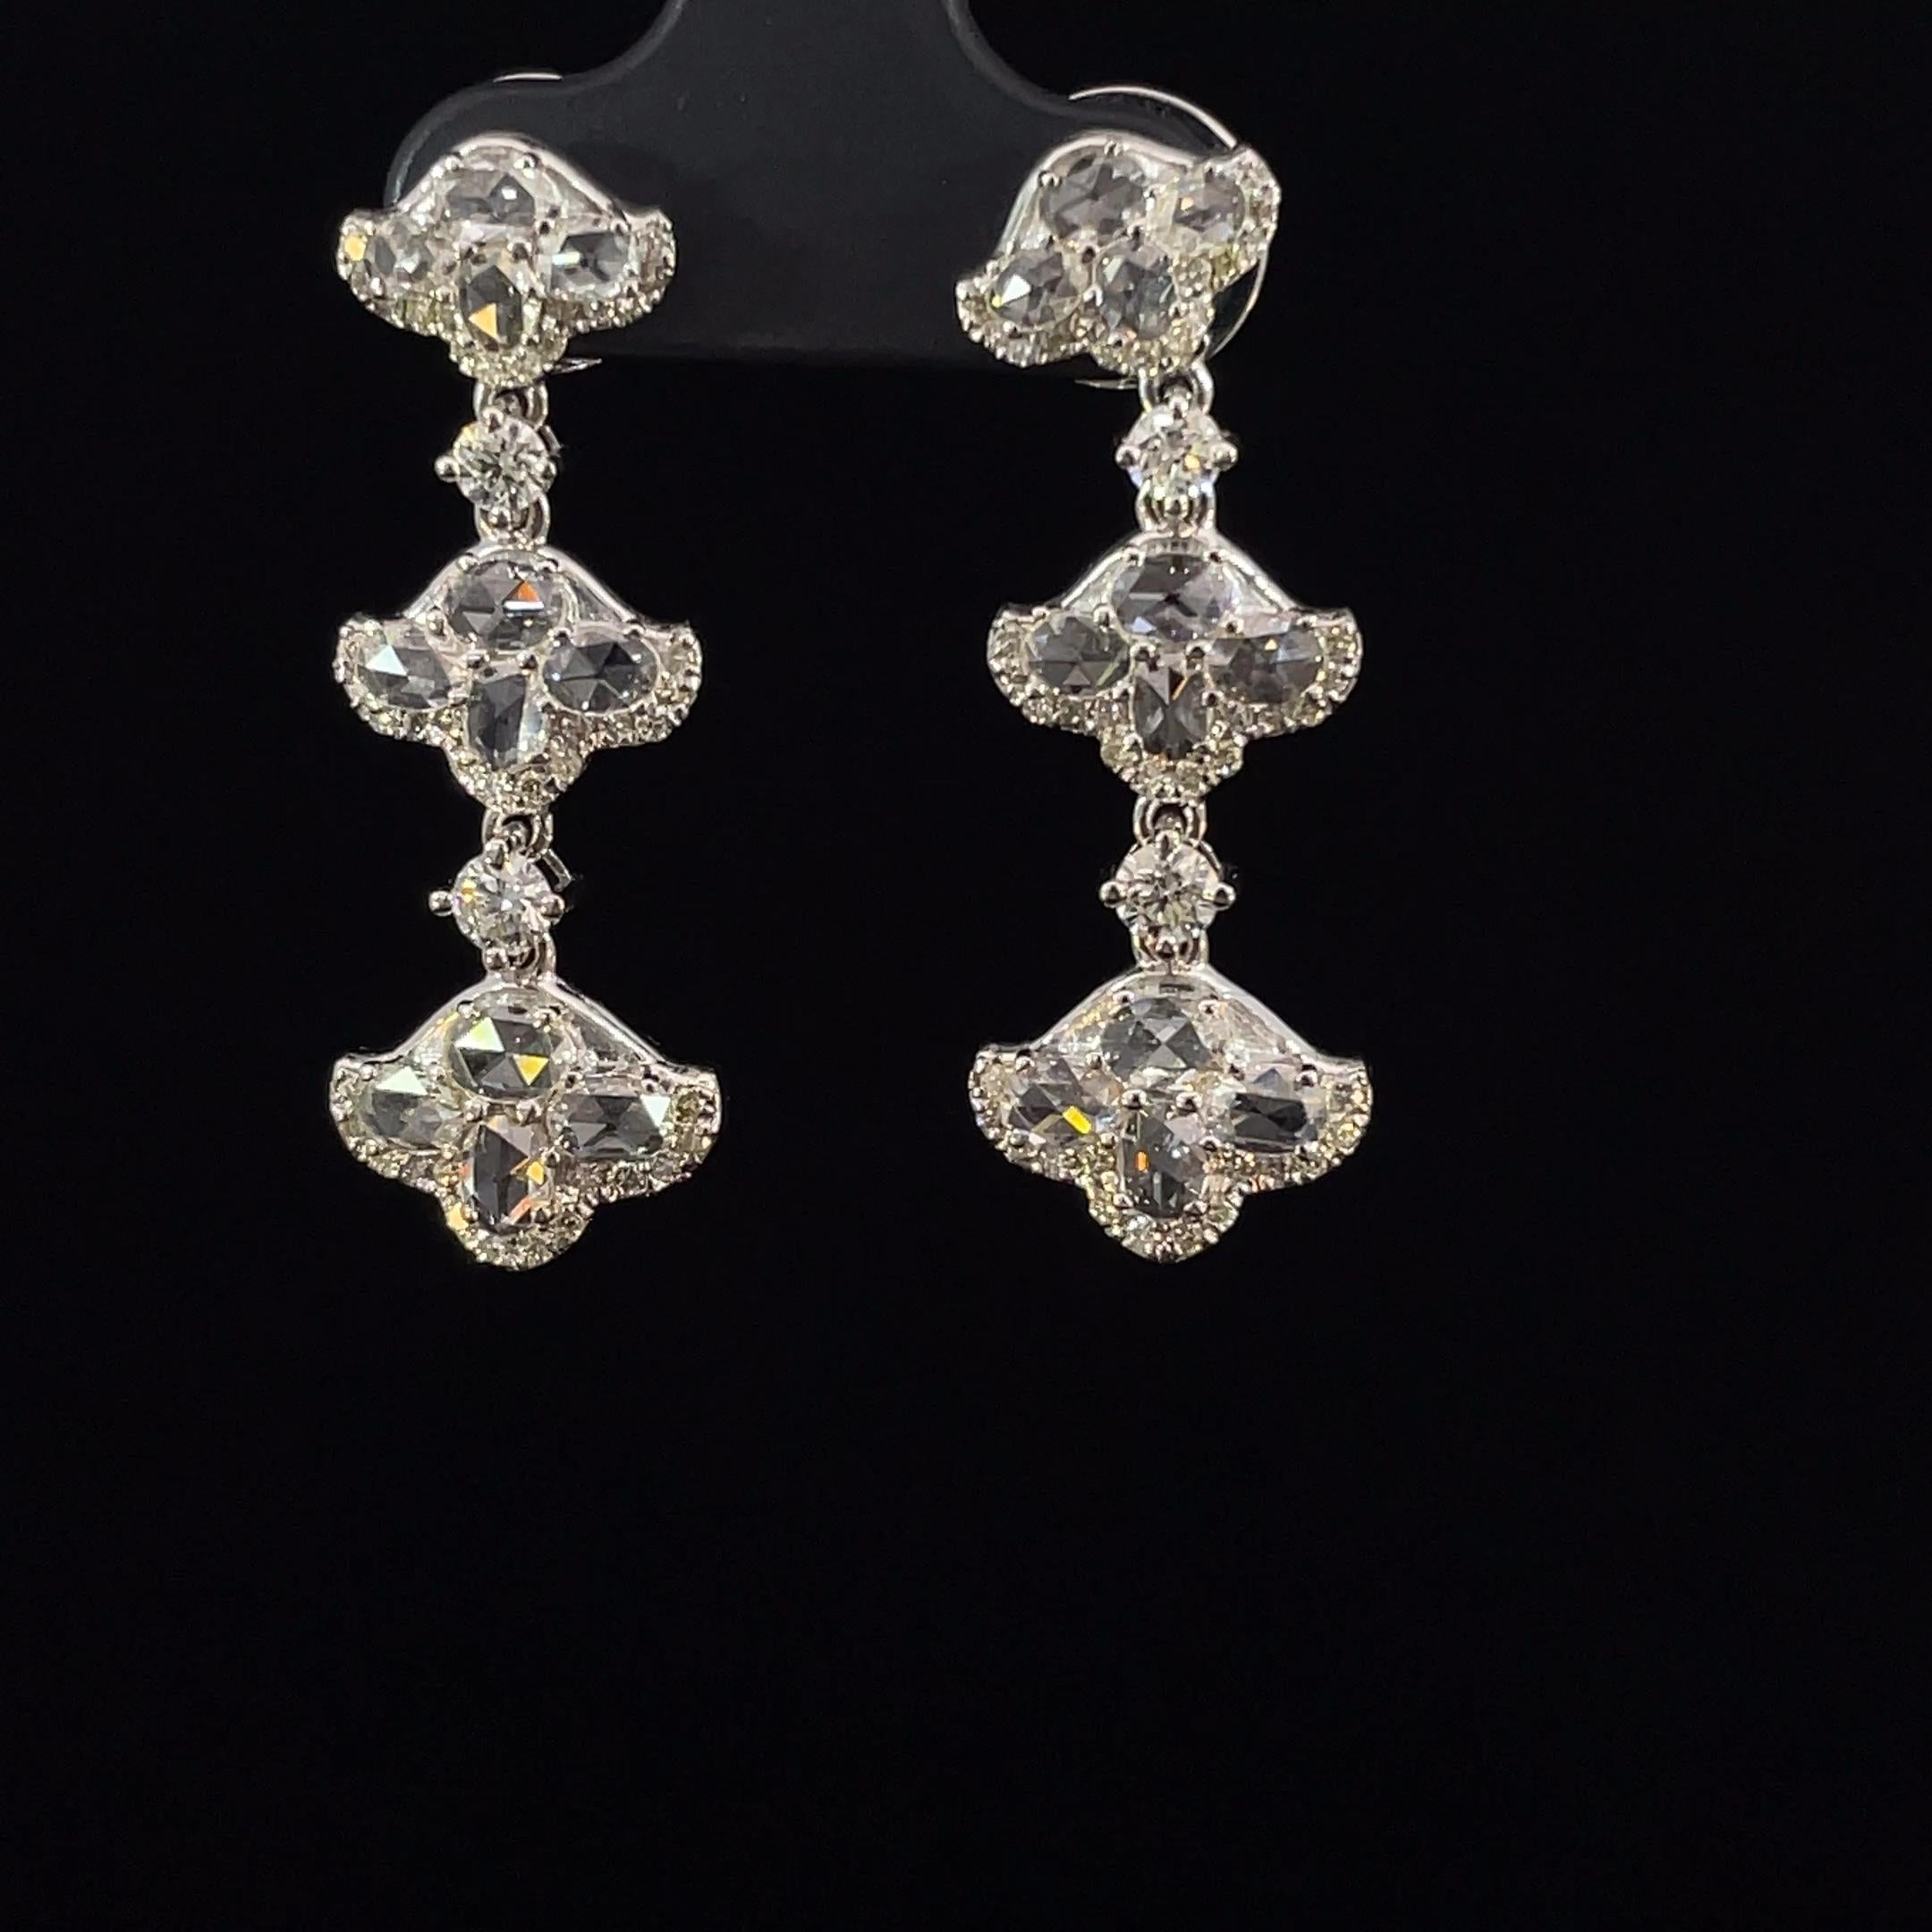 Voici nos Tulip Drops de Rosecut, un chef-d'œuvre d'inspiration botanique qui apporte une touche de beauté naturelle à votre collection de bijoux. Ces boucles d'oreilles exquises présentent un total de 0,79 carats de diamants de taille ronde,